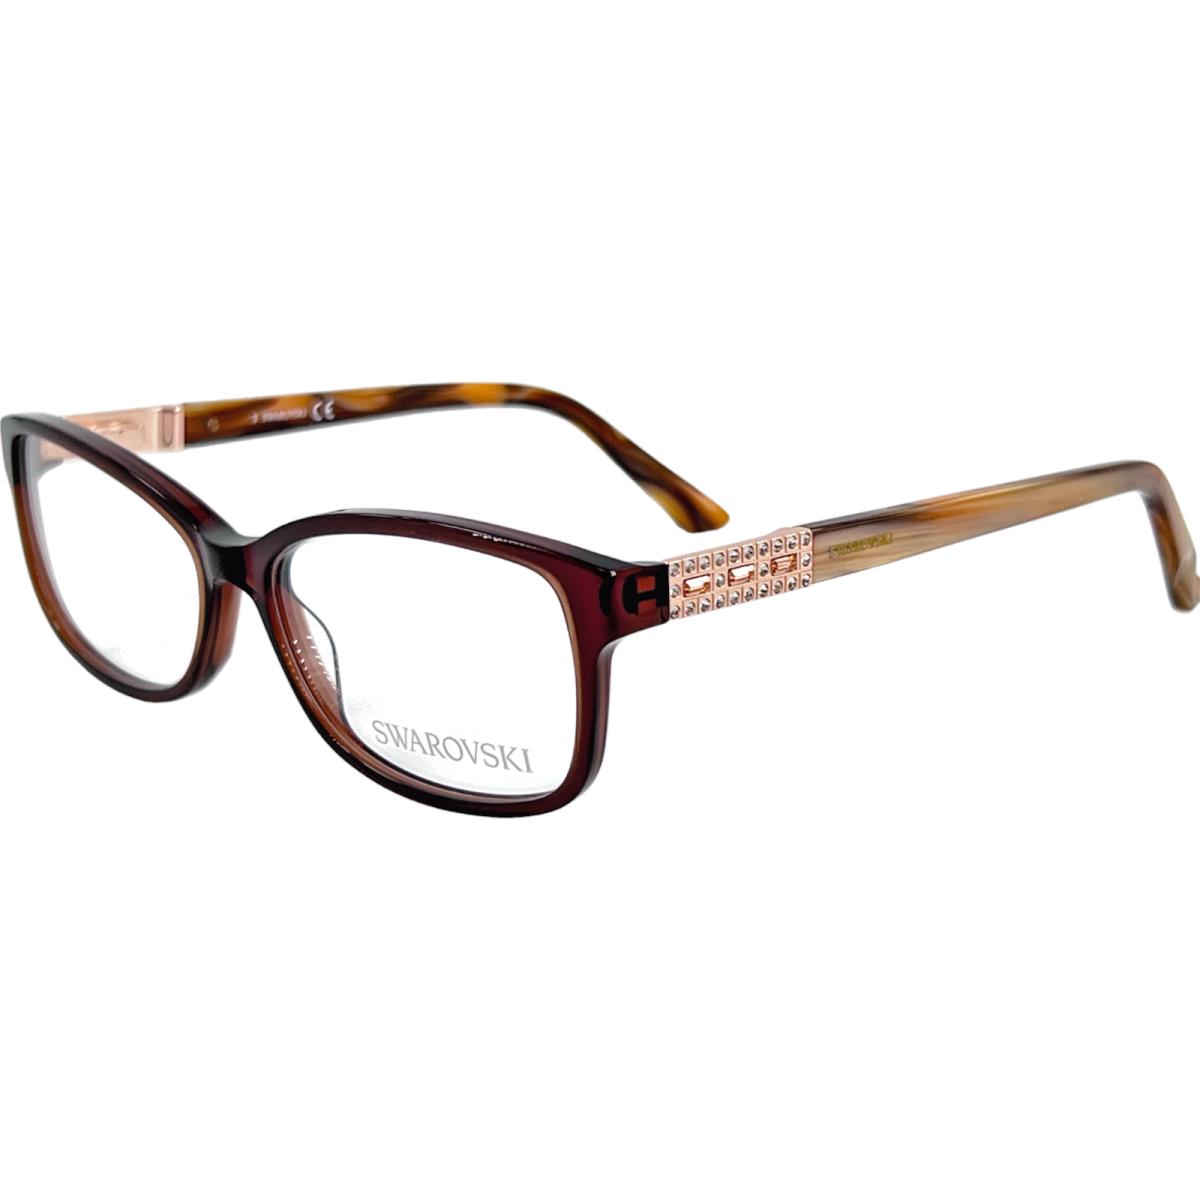 Swarovski SW5155 Foxy Women`s Plastic Eyeglass Frame 045 Lt Brown 53-14 W/case - Frame: Brown